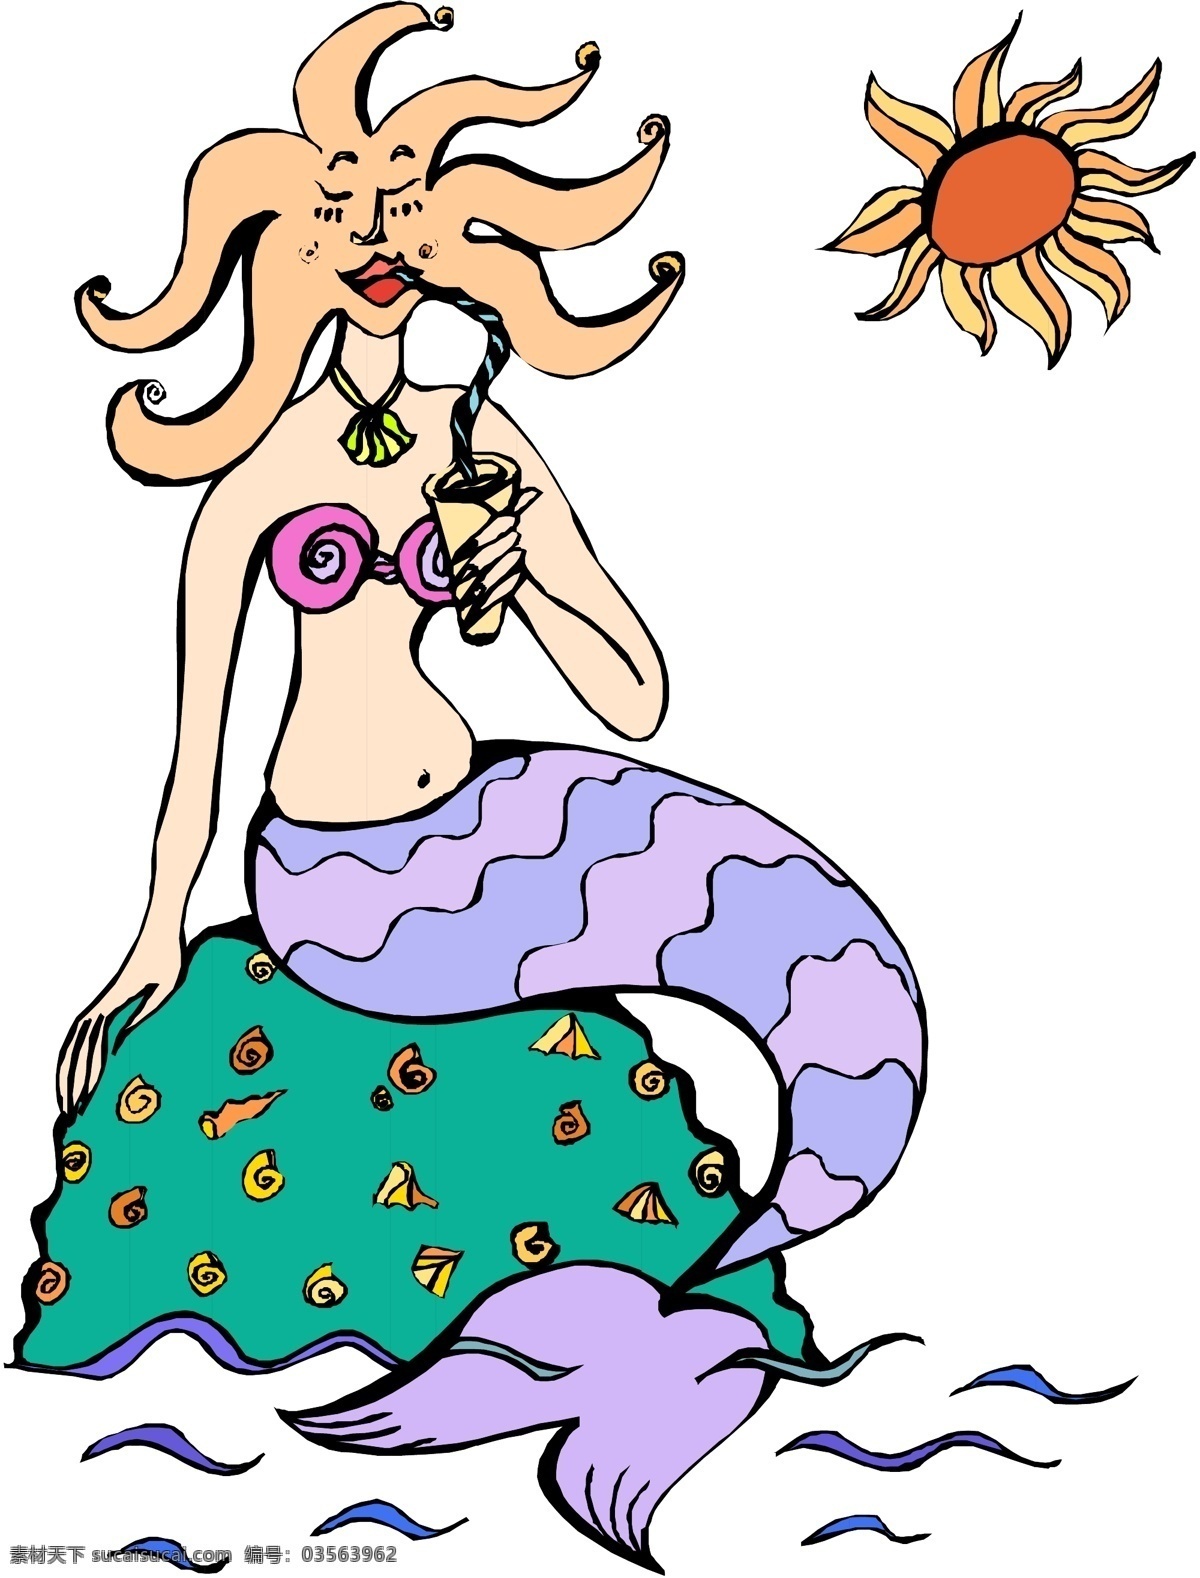 章 鱼头 美人鱼 坐在 礁石 上 晒太阳 大海 幻想 神话 矢量图 矢量人物